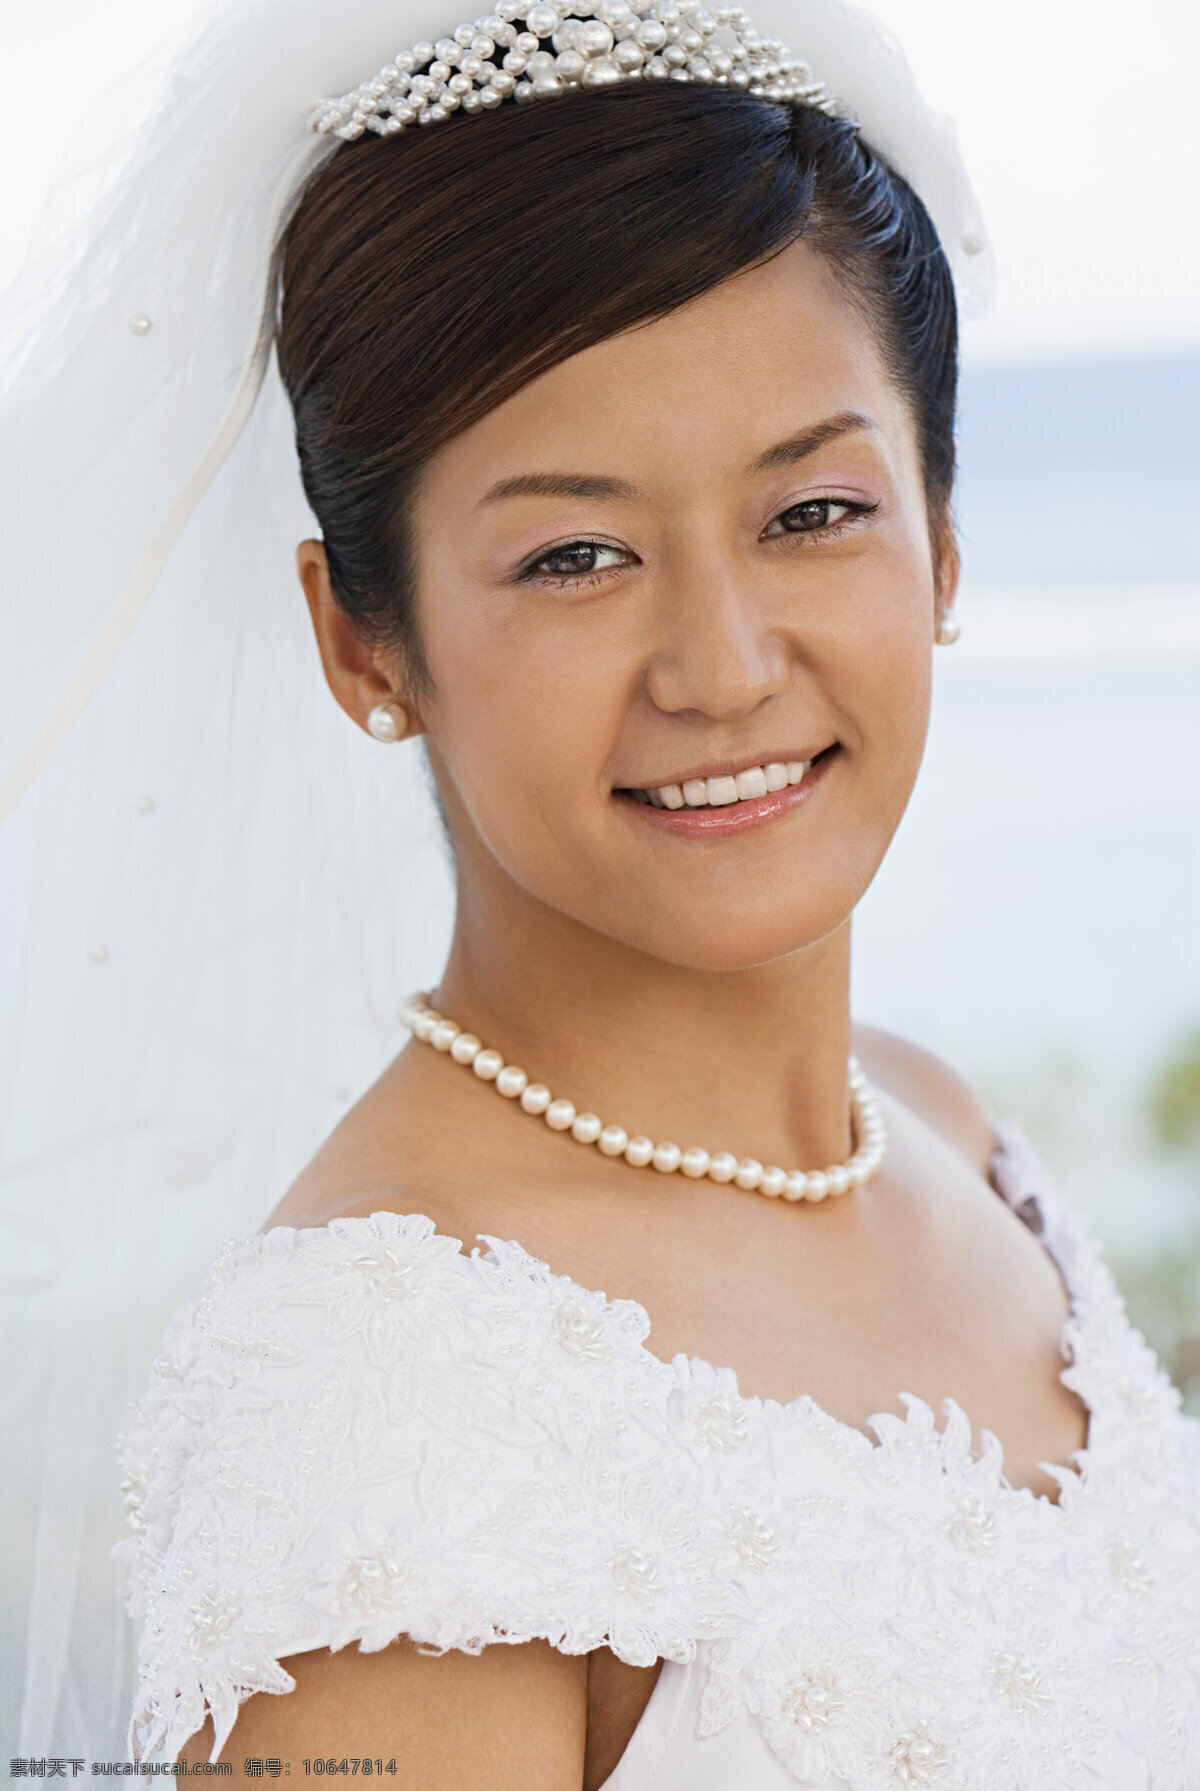 穿着 婚纱 戴 项链 幸福 微笑 新娘 海边 婚礼 洁白 人物 高清摄影 人物图库 高清图片 情侣图片 人物图片